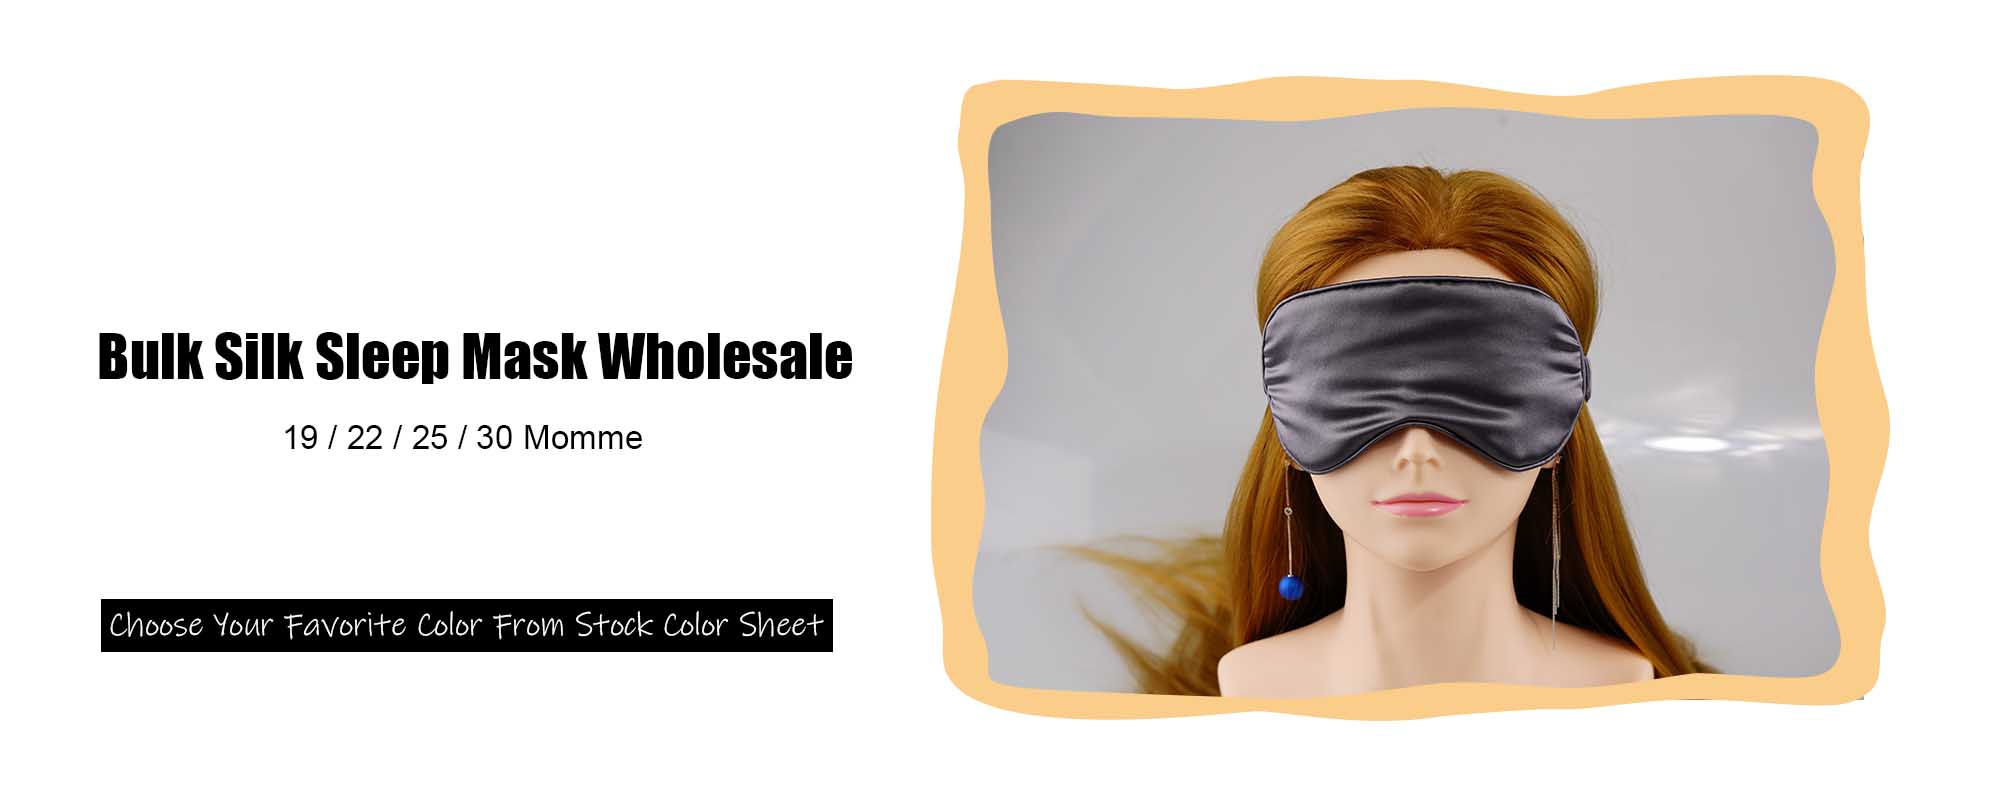 Bulk Silk Sleep mask Wholesale